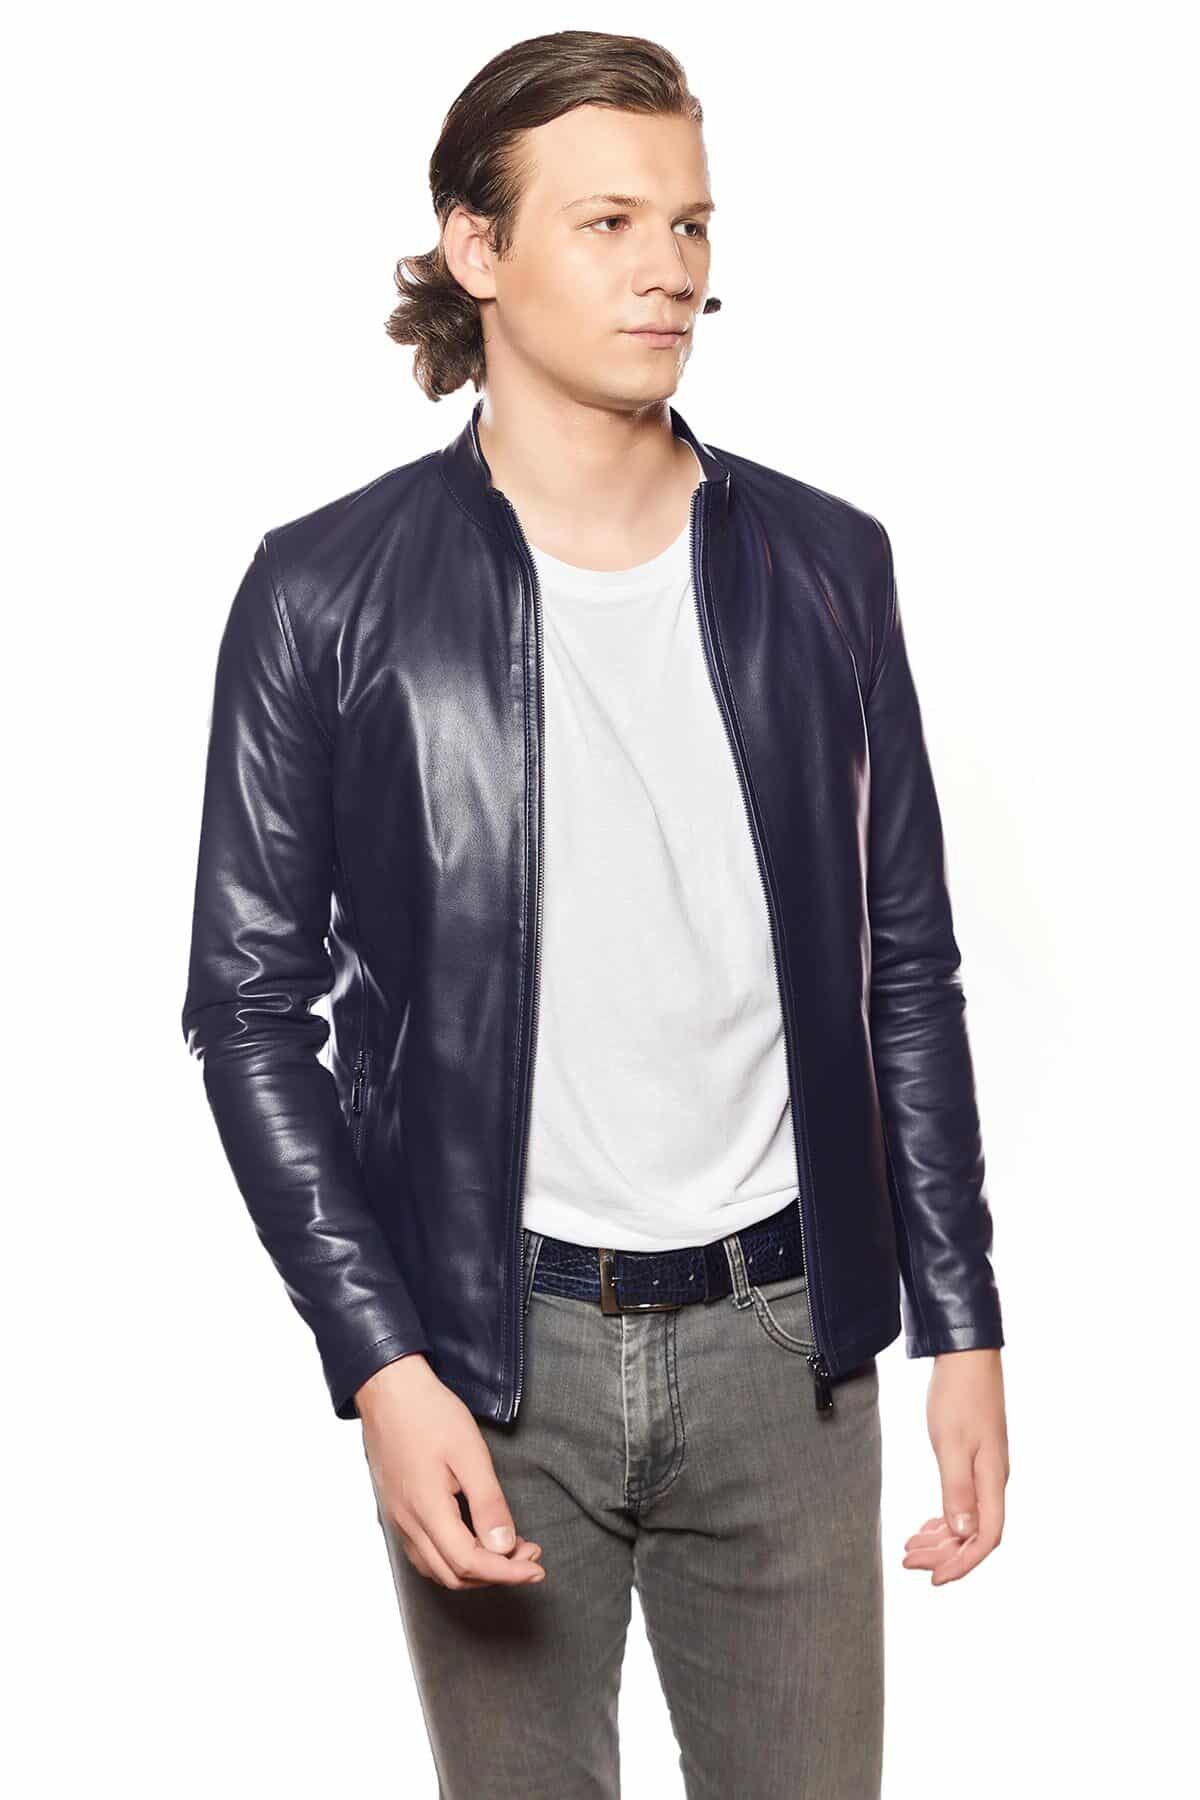 Men's Leather Jackets  Real Men Jacket For Sale